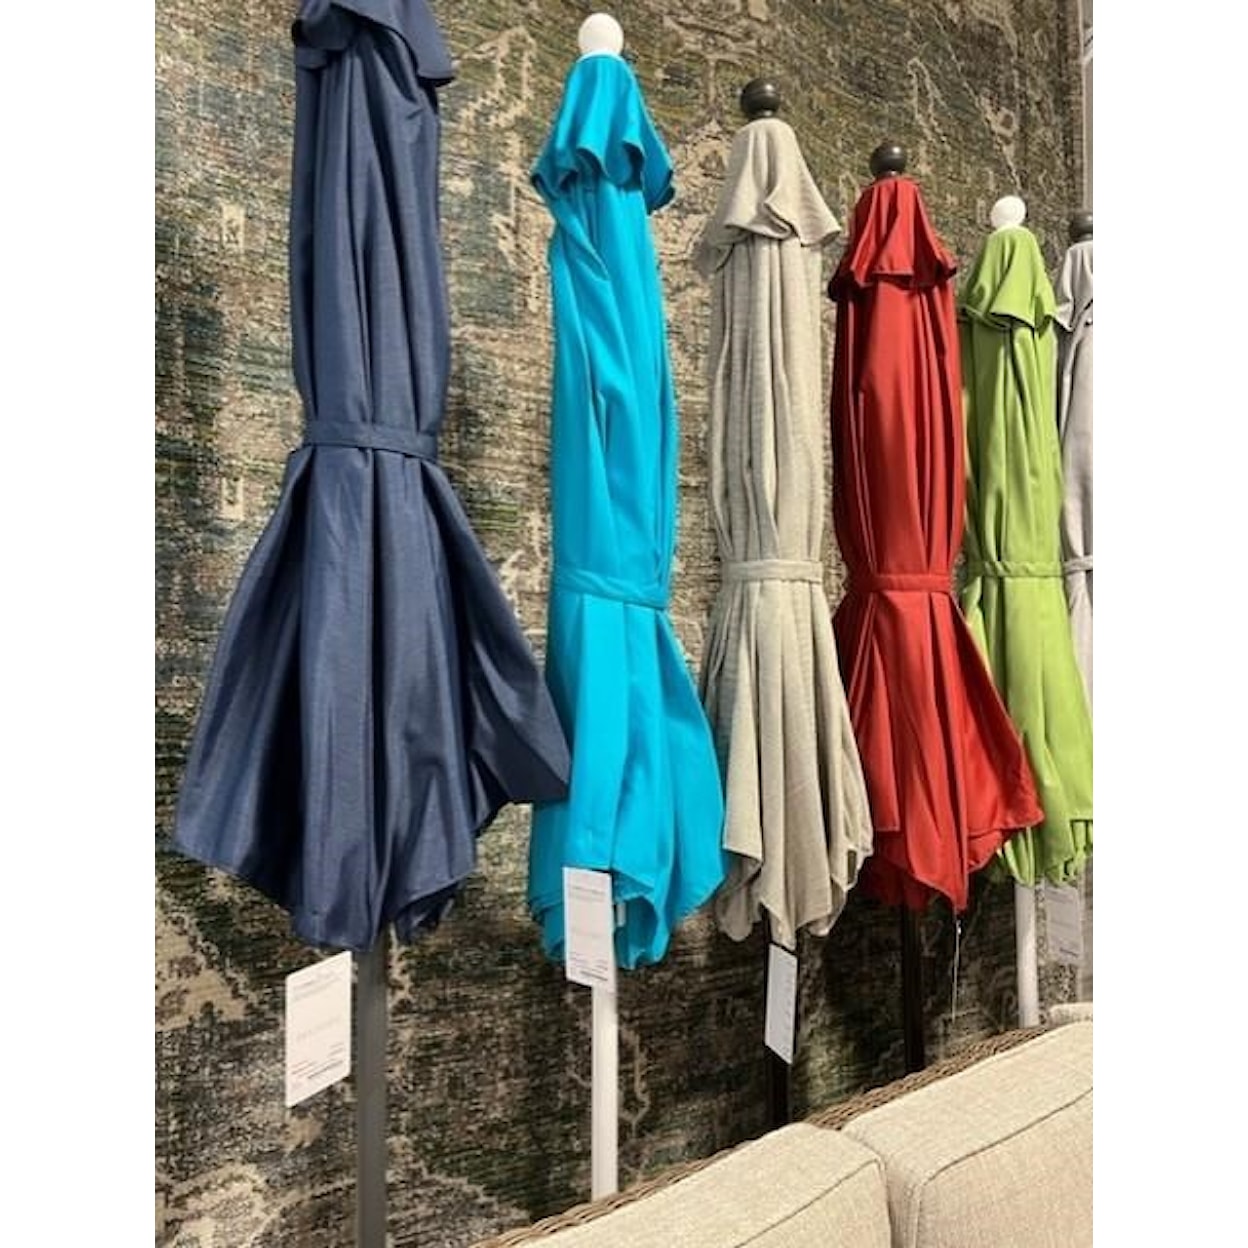 Suntastic Umbrellas 9' Umbrella Turquoise